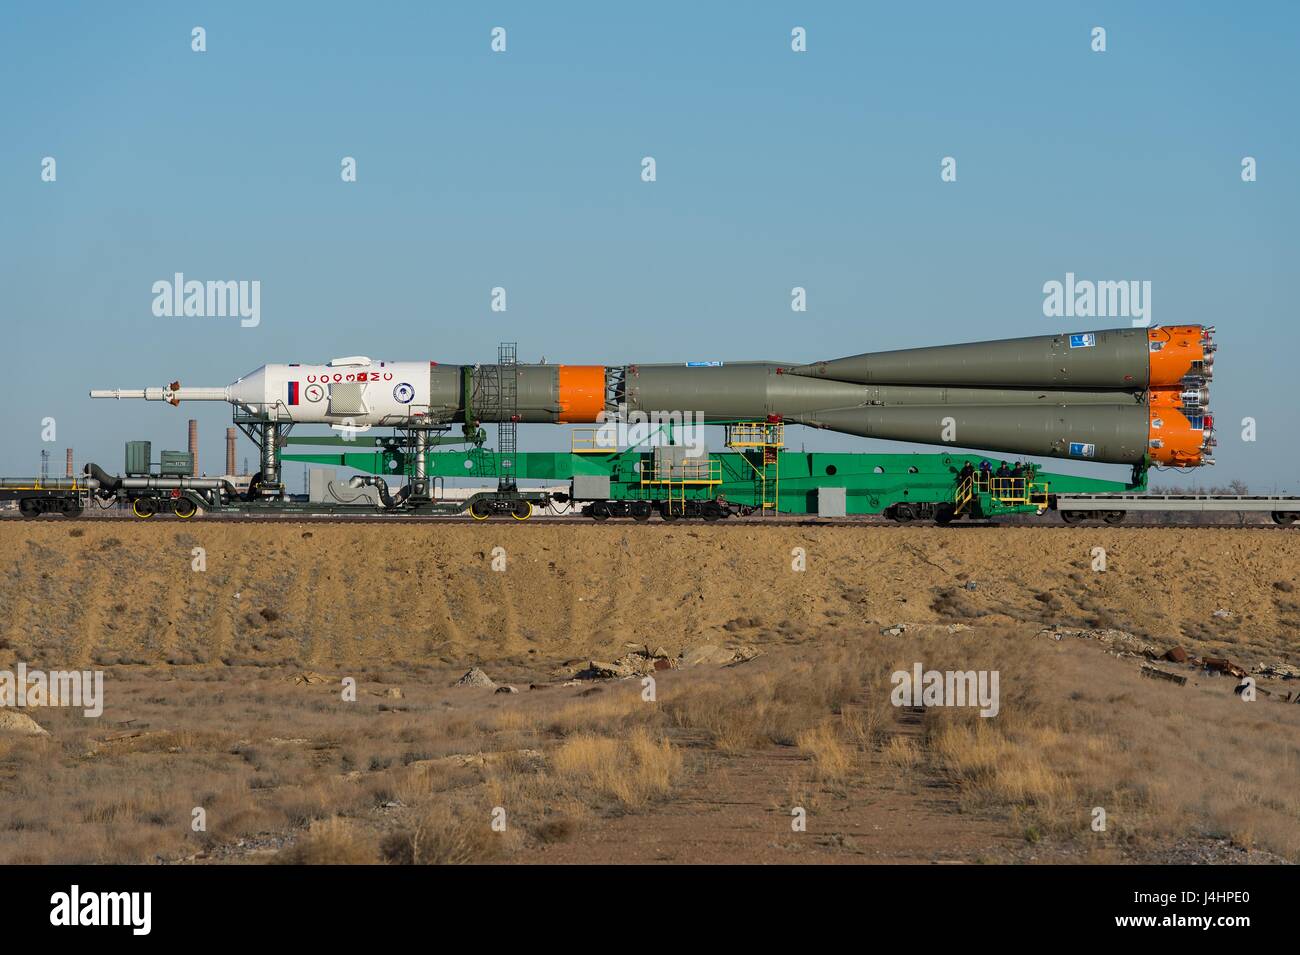 Ein Zug rollt die Sojus MS-04 Raumschiff Rakete zur Startrampe Kosmodrom Baikonur in Vorbereitung für den Start der NASA internationale Raumstation ISS-Expedition 51 17. April 2017 in Baikonur, Kasachstan.     (Foto von Aubrey Gemignani /NASA über Planetpix) Stockfoto